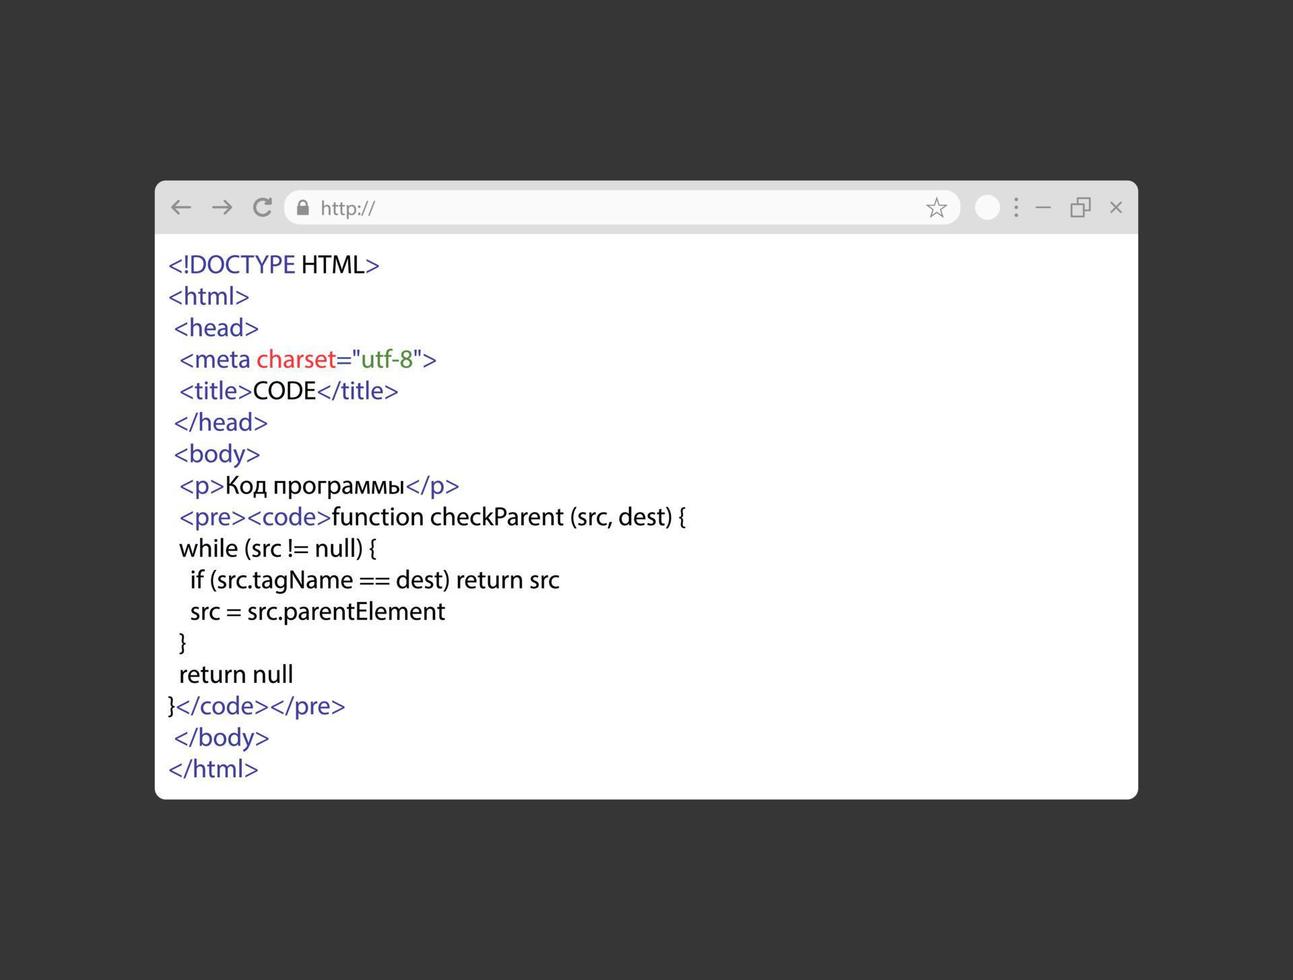 código html simple en la página web blanca. ventana de navegador realista con código css. concepto de desarrollo de sitios web. vector